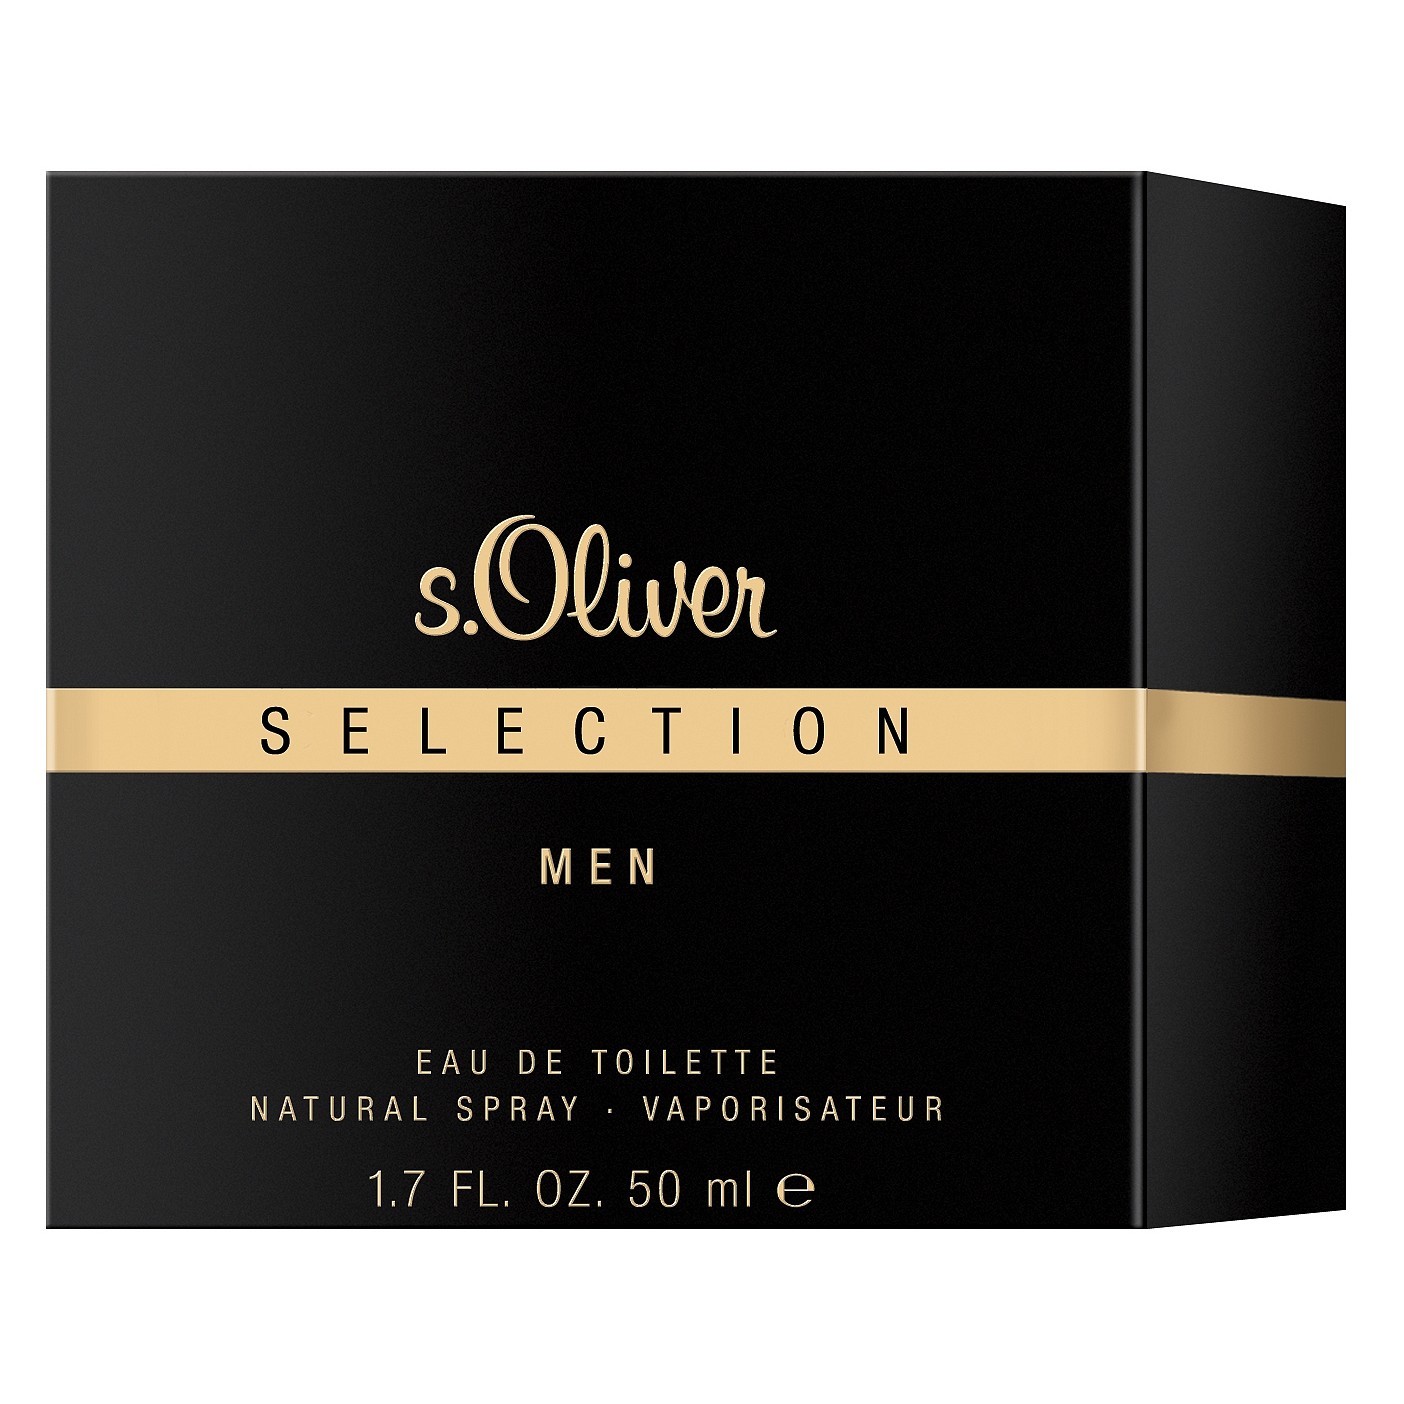 S.Oliver Selection Men Eau de Toilette 50ml